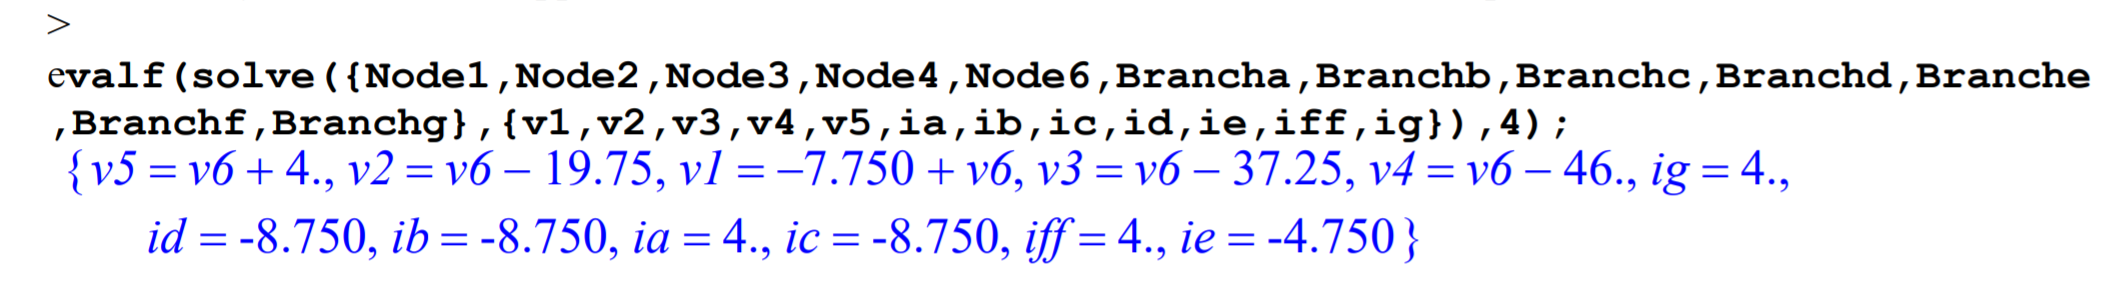 Se repite el código de la figura anterior, salvo la omisión de v6 de la lista de variables y la omisión de GROUND de la lista de condiciones. Las soluciones devueltas por el programa son numéricas para las corrientes de ramificación pero son en términos de v6 para todos los voltajes de los nodos.